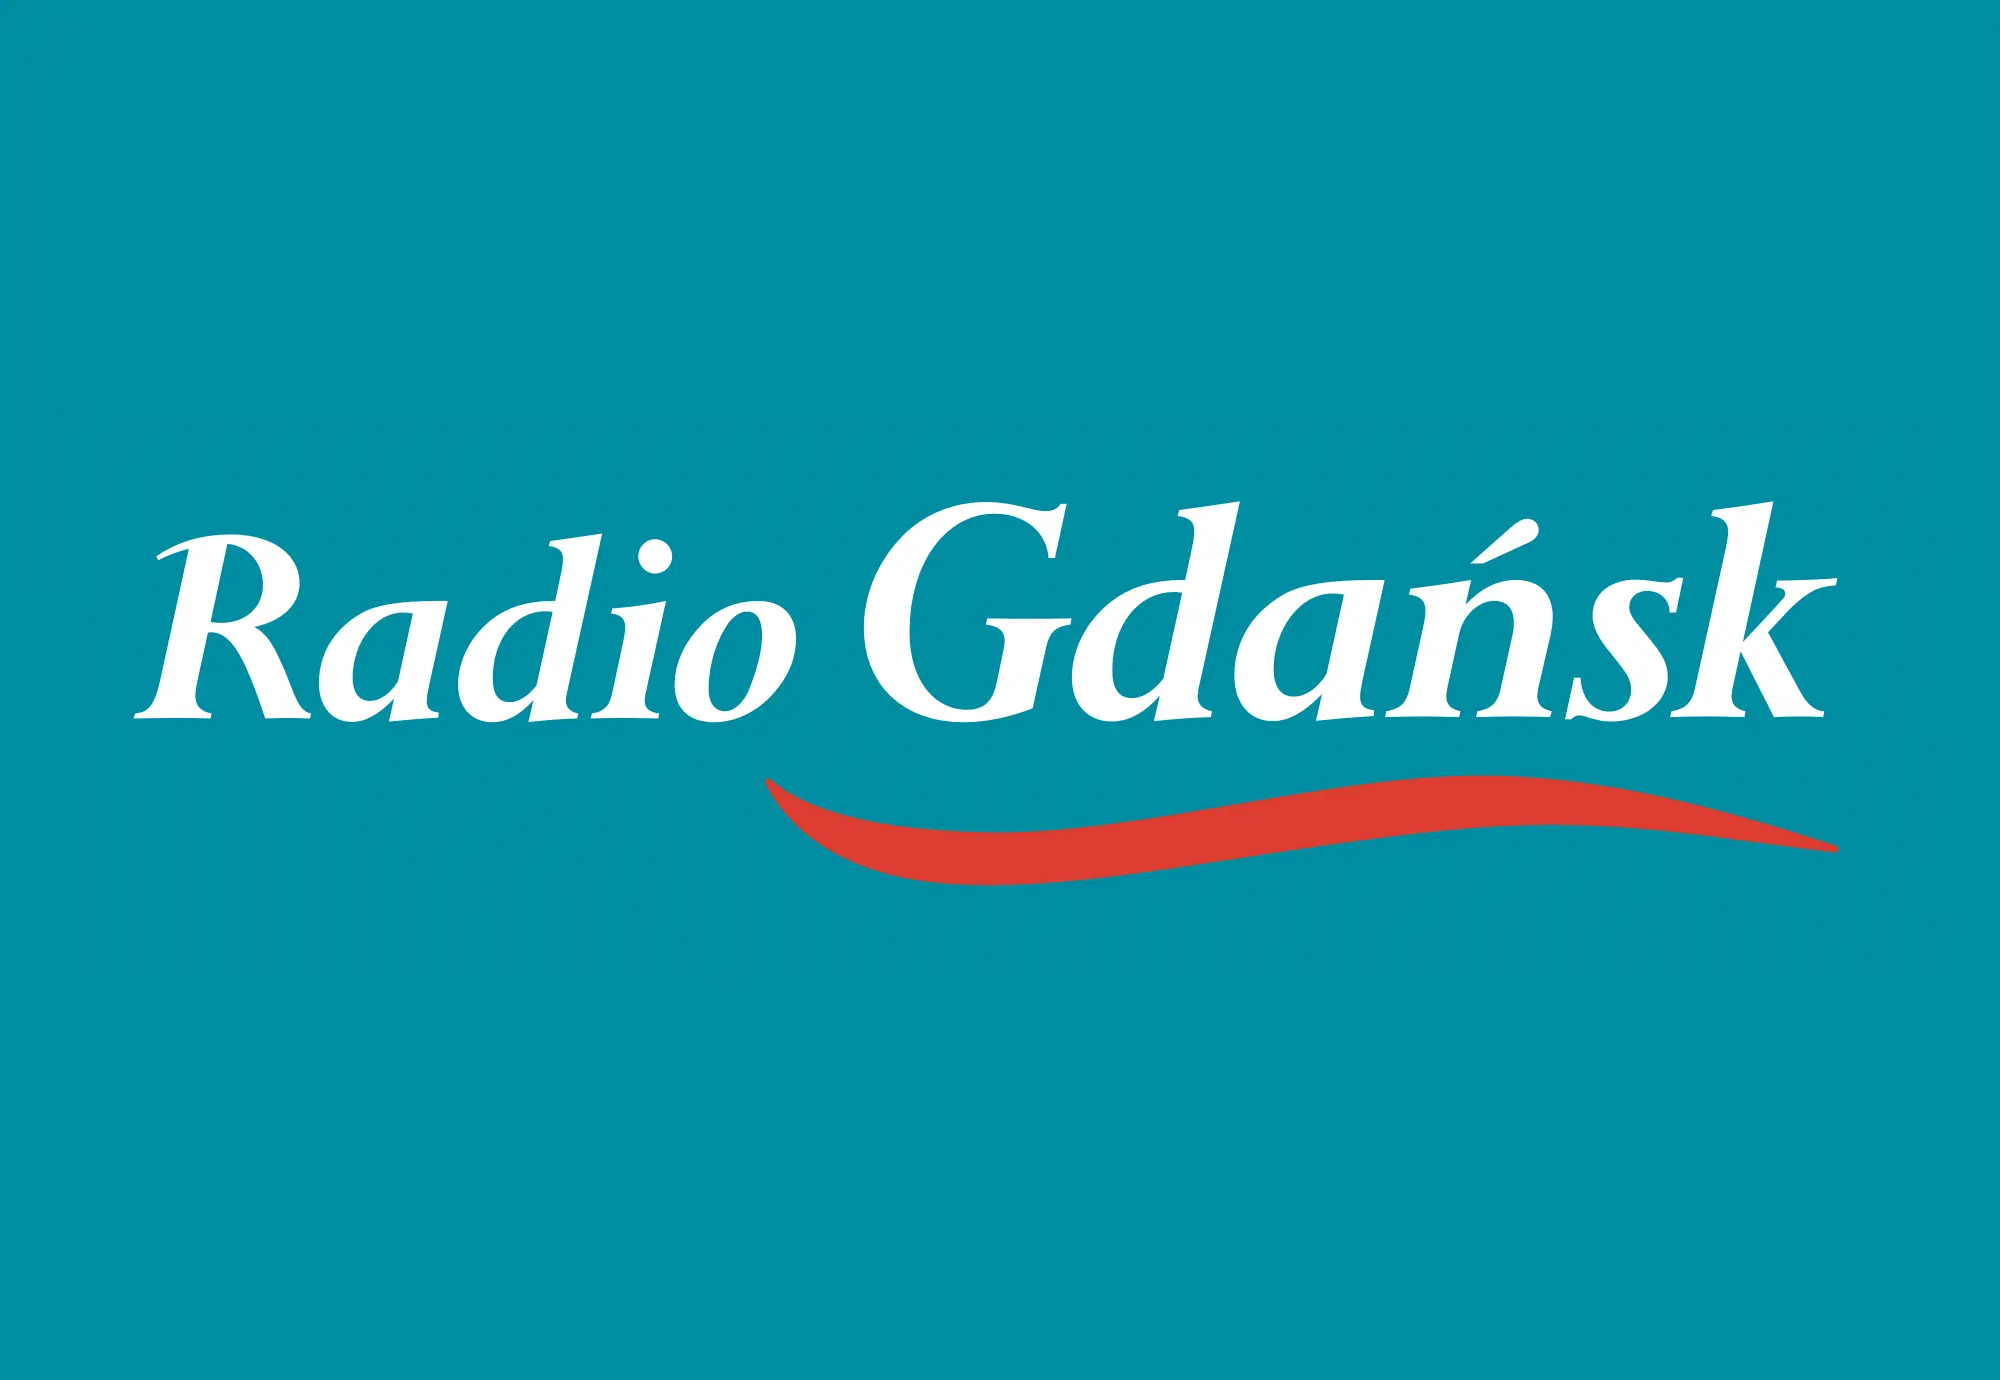 22.08 audycja radio gdansk - Jakie stacje radiowe Gdansk